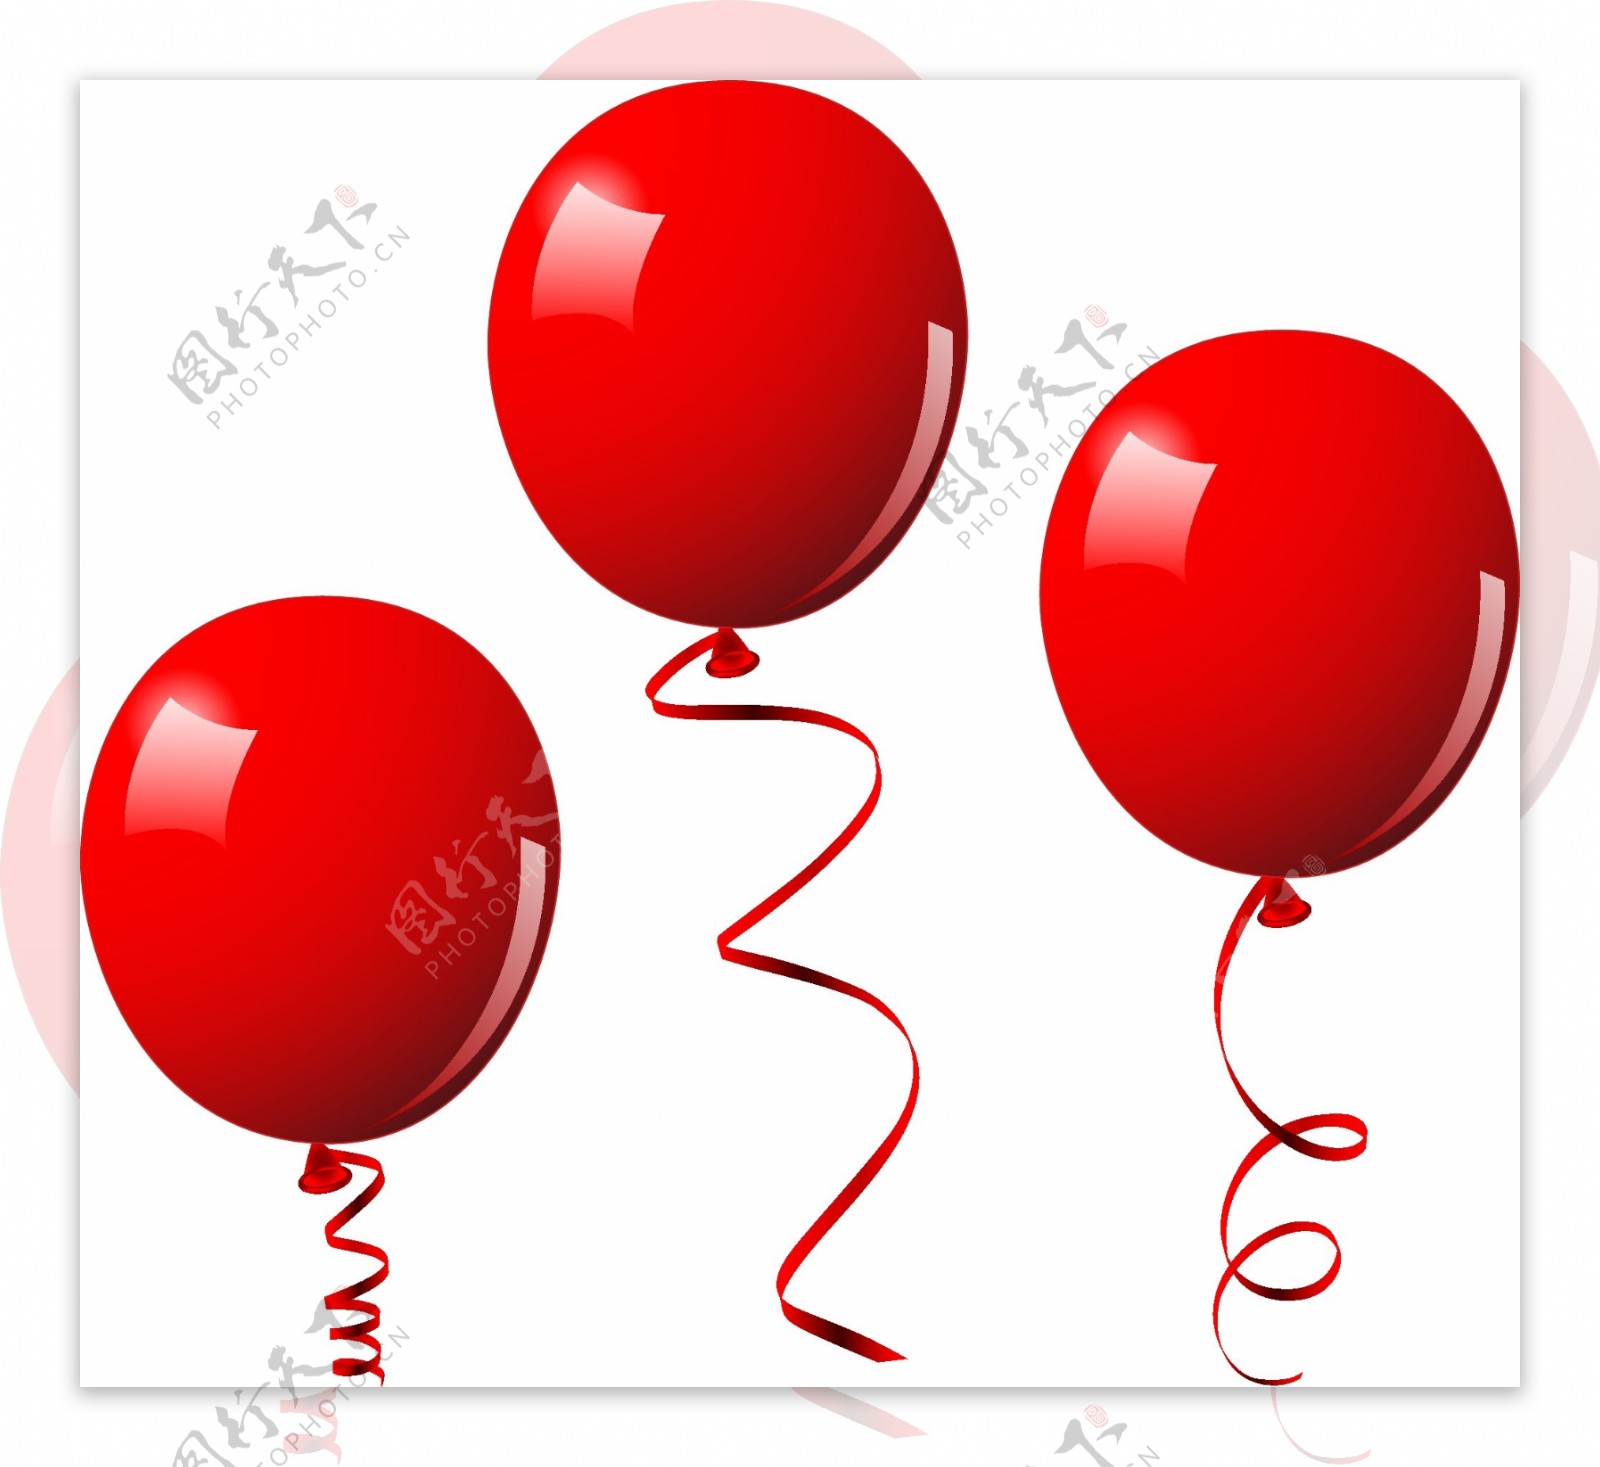 缤纷彩色气球矢量素材6